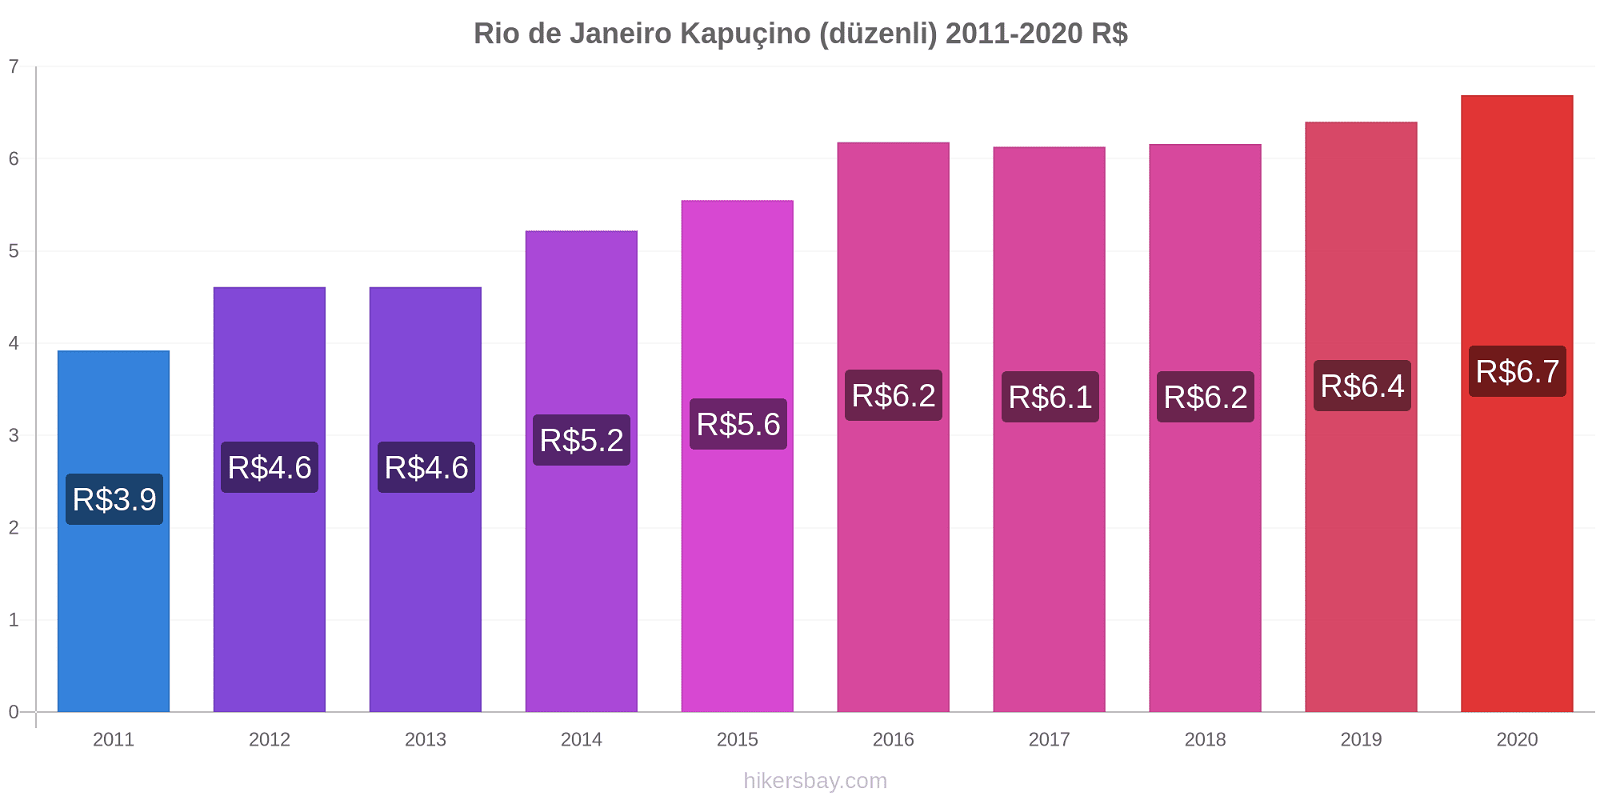 Rio de Janeiro fiyat değişiklikleri Kapuçino (düzenli) hikersbay.com